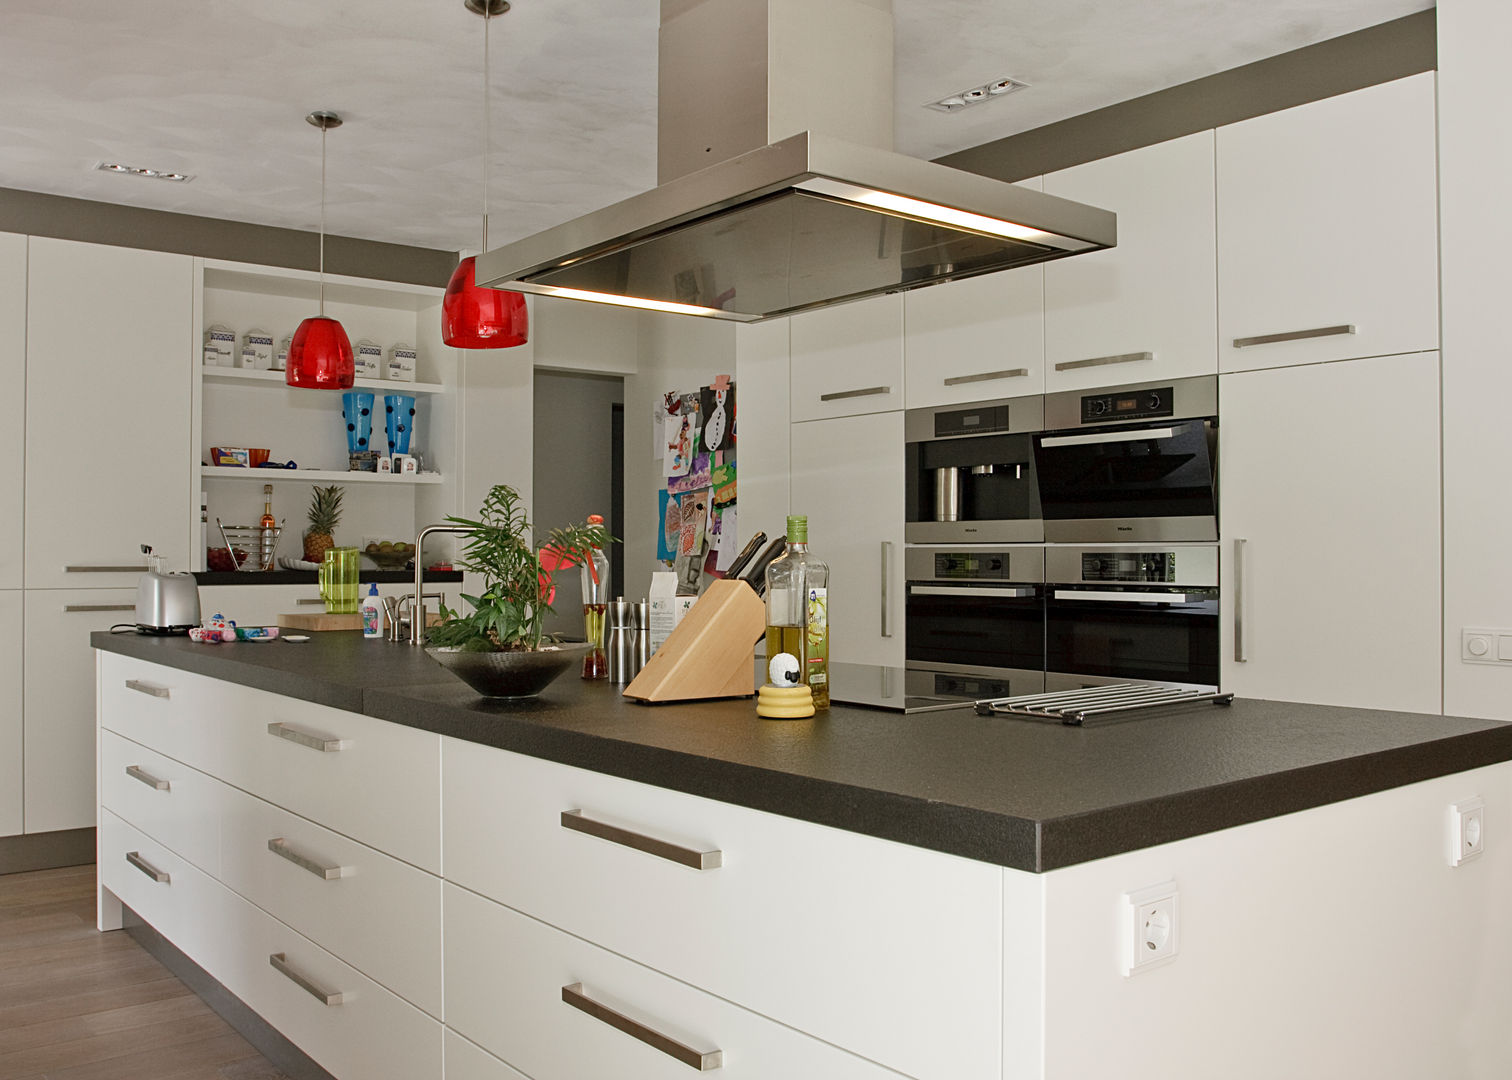 Open keuken, ruimte, licht - een keukeneiland biedt alle mogelijkhede, Thijs van de Wouw keuken- en interieurbouw Thijs van de Wouw keuken- en interieurbouw Kitchen